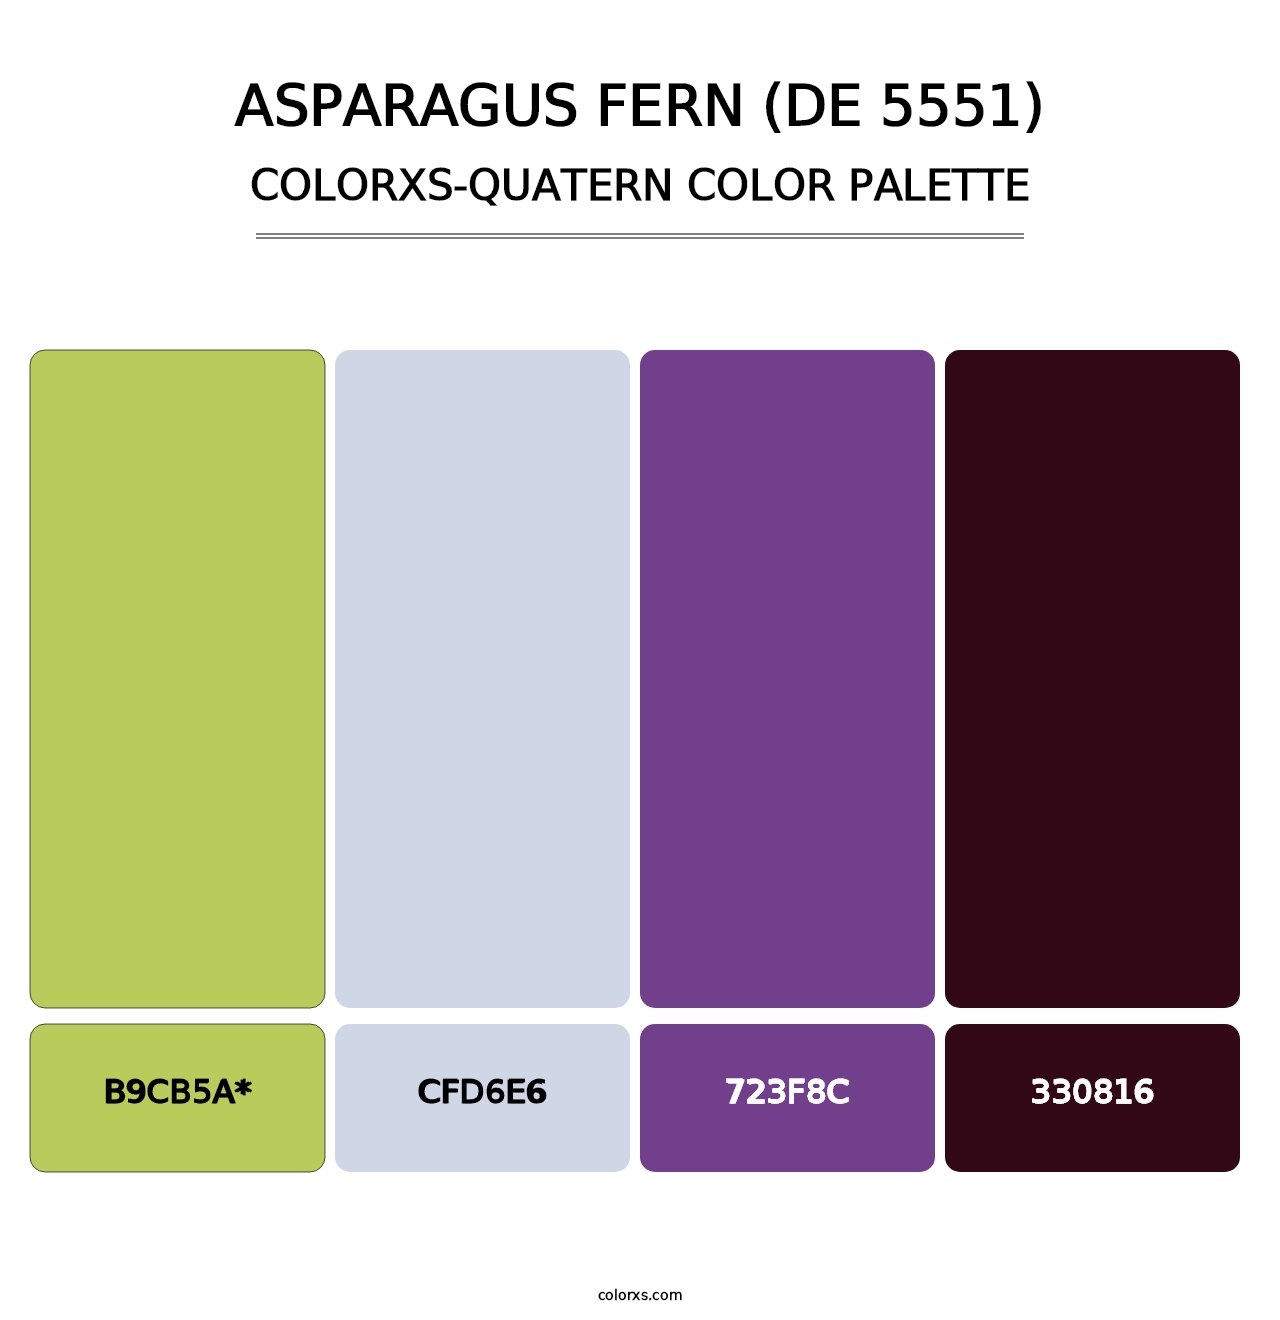 Asparagus Fern (DE 5551) - Colorxs Quatern Palette